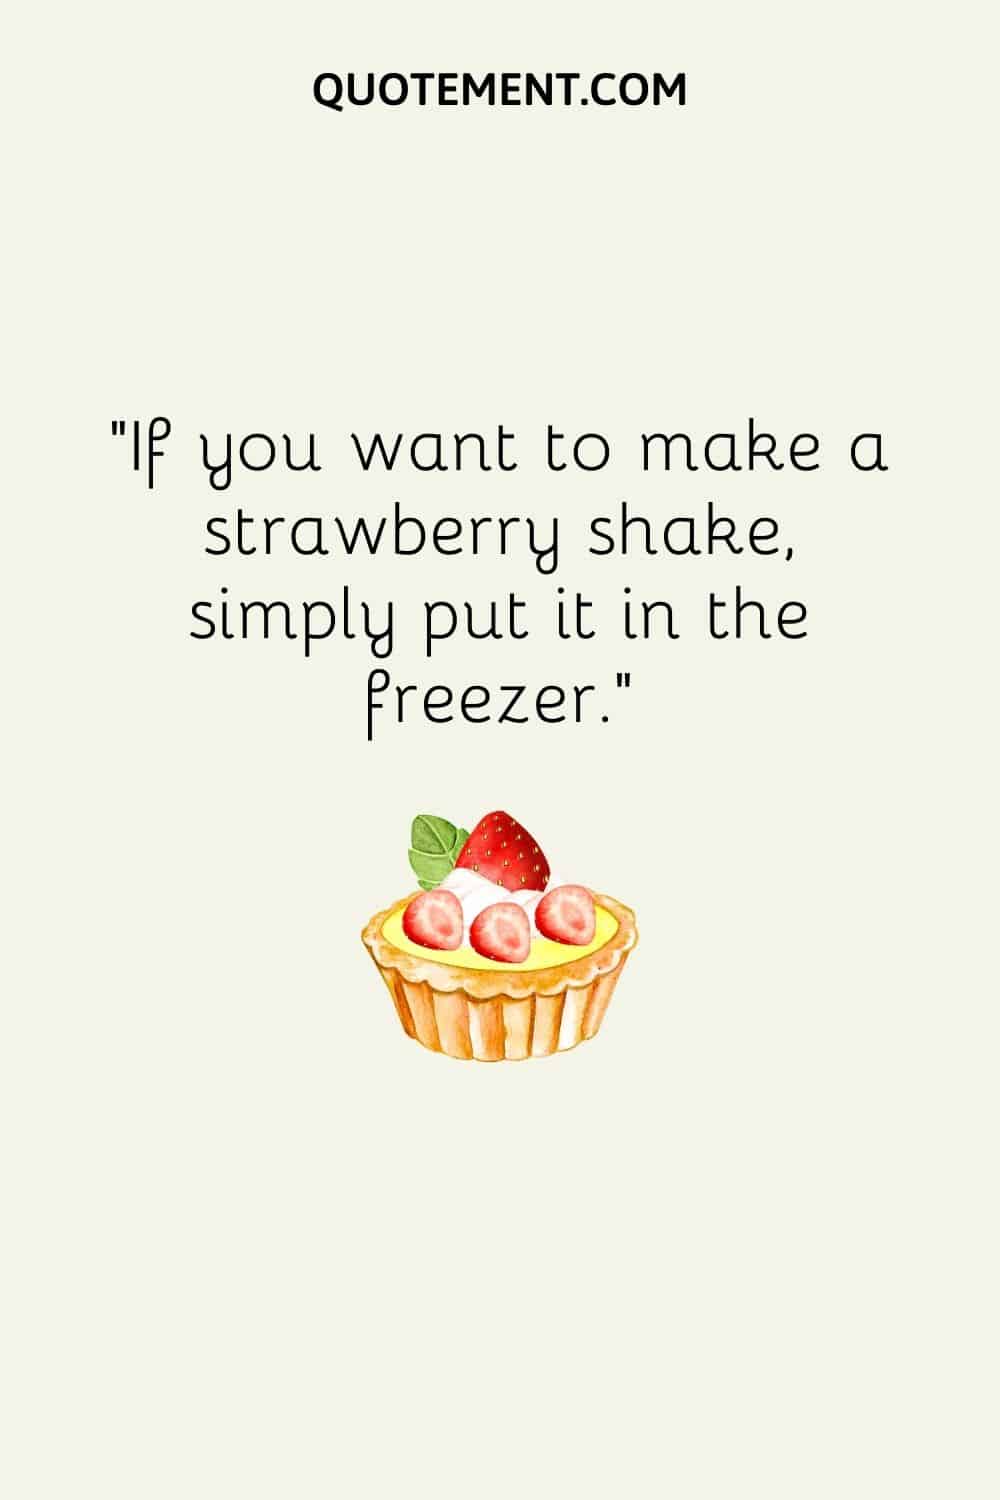 Si quieres hacer un batido de fresa, simplemente mételo en el congelador